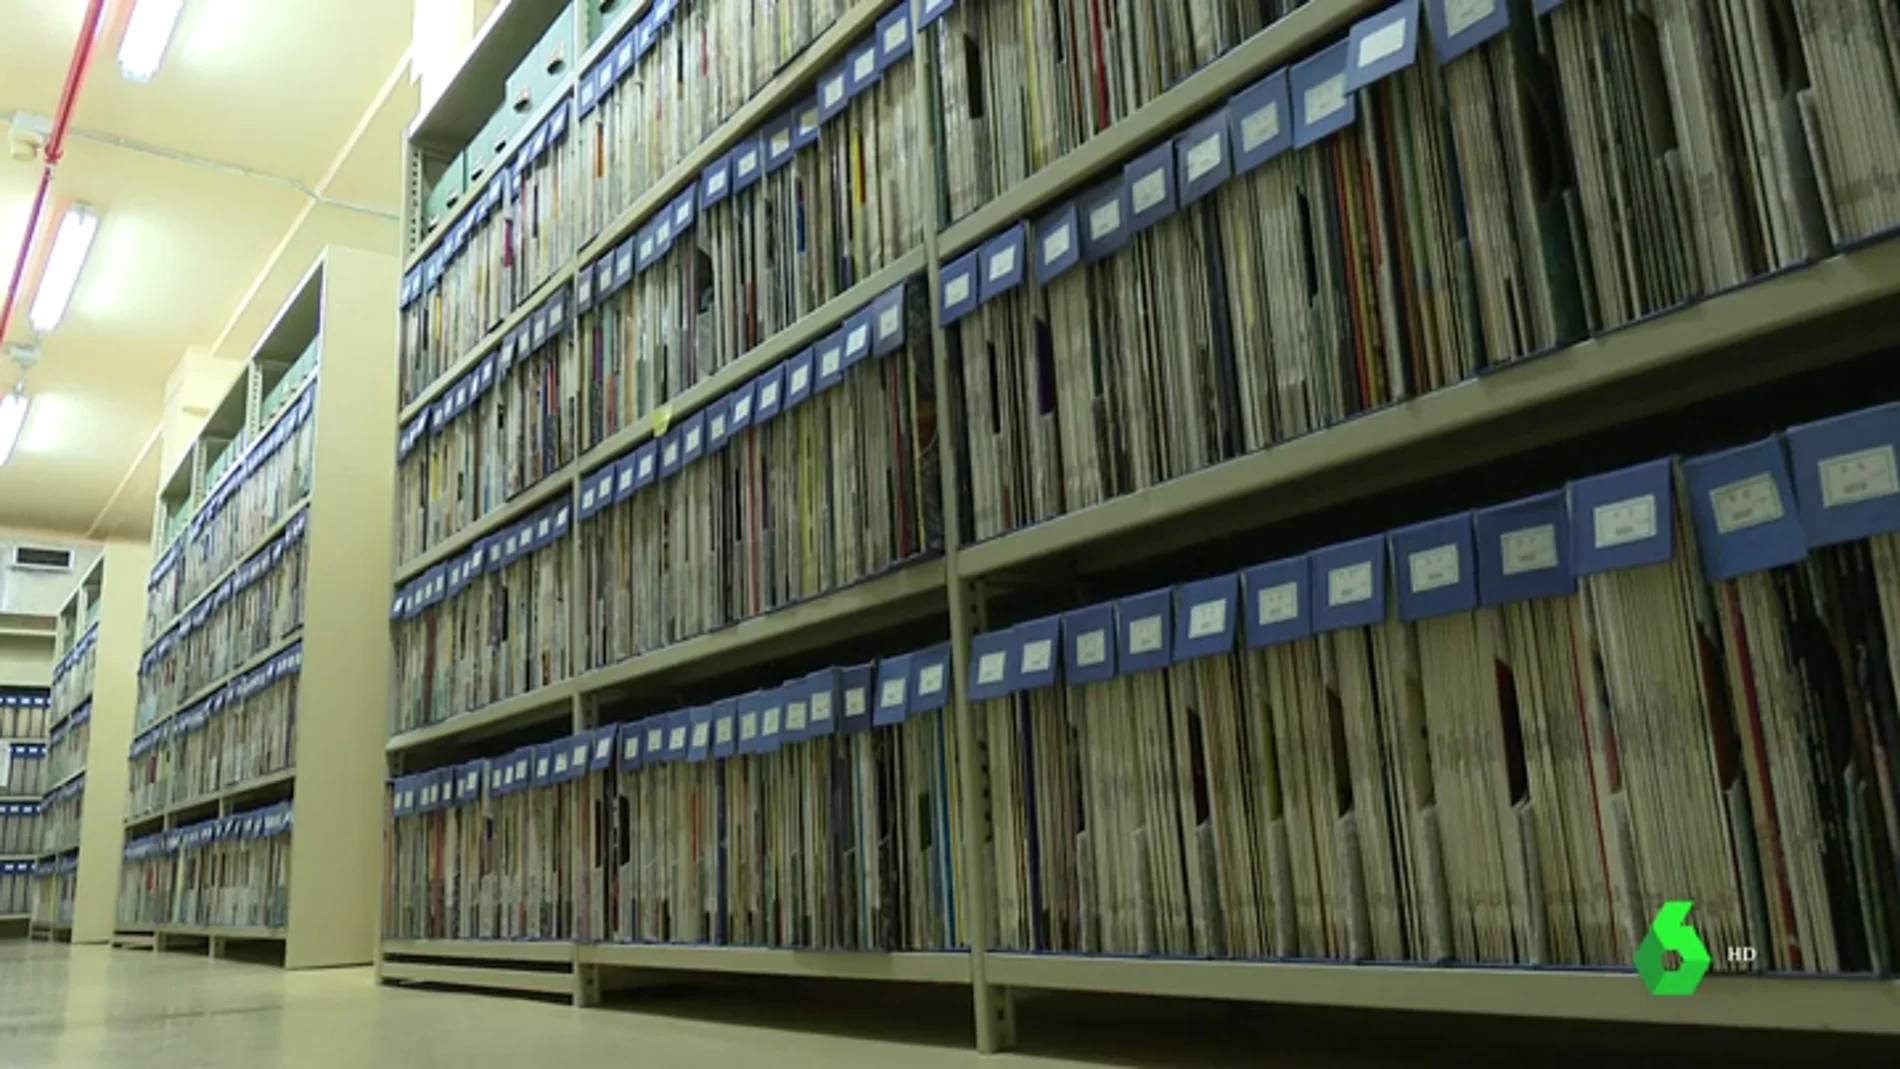 Música, poemas, cuentos e incluso discursos históricos: miles de vinilos esperan ser clasificados en la Biblioteca Nacional